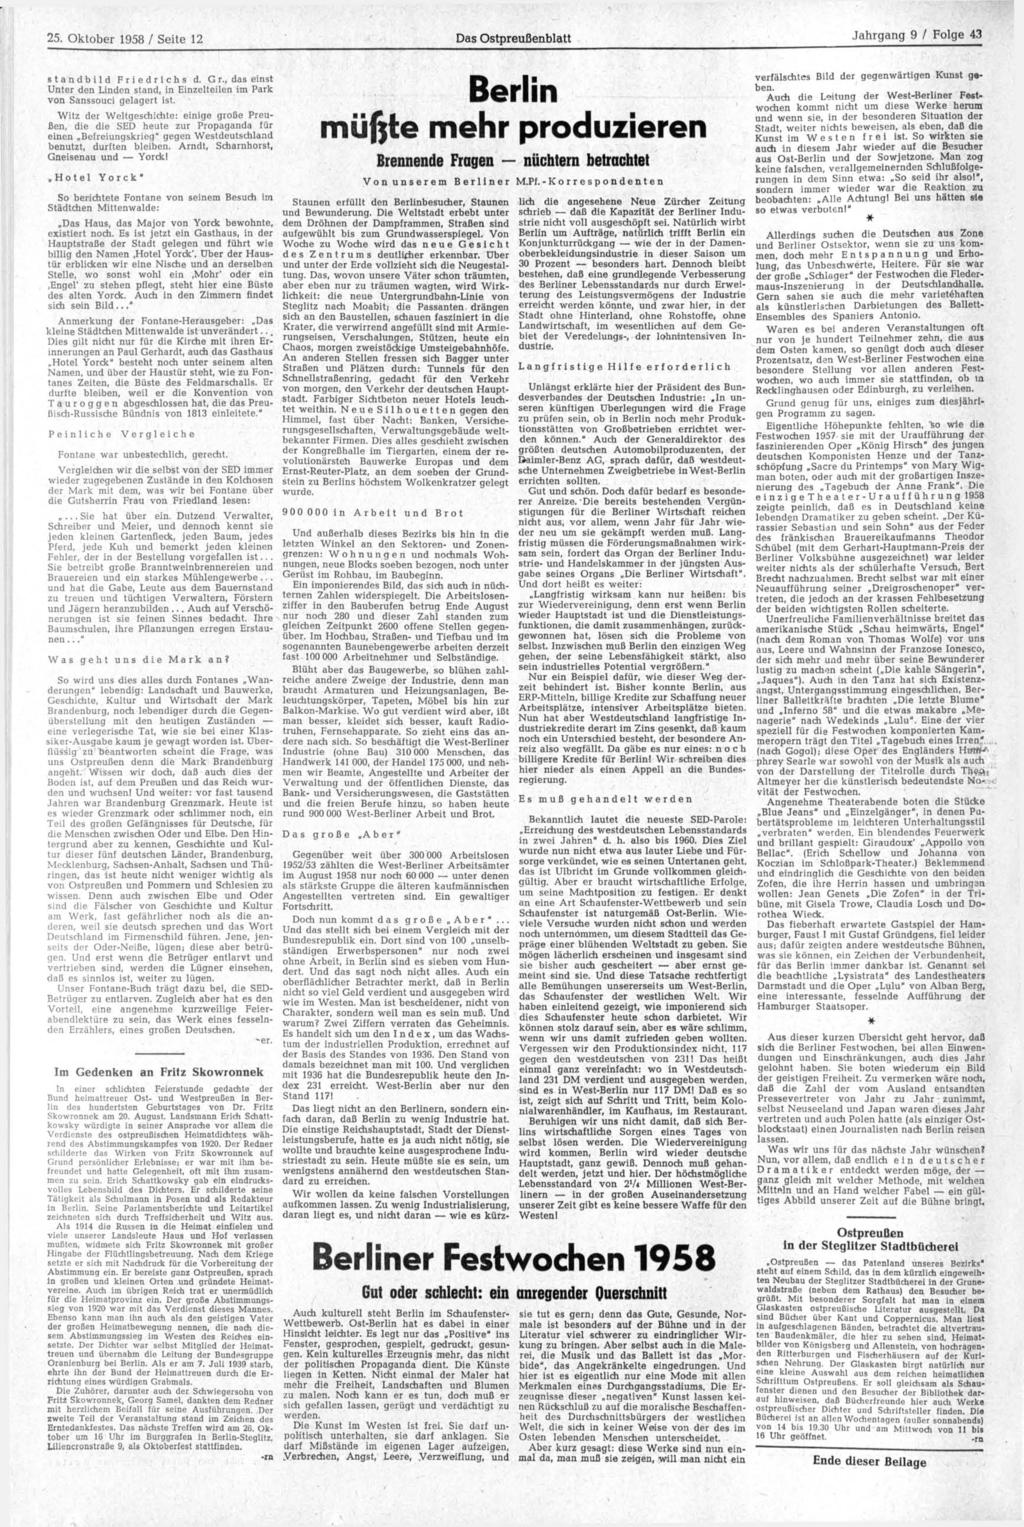 25. Oktober 1958 / Seite 12 Das Ostpreußenblatt Standbild Friedrichs d. Gr., das einst Unter den Linden stand, in Einzelteilen im Park von Sanssouci gelagert ist.